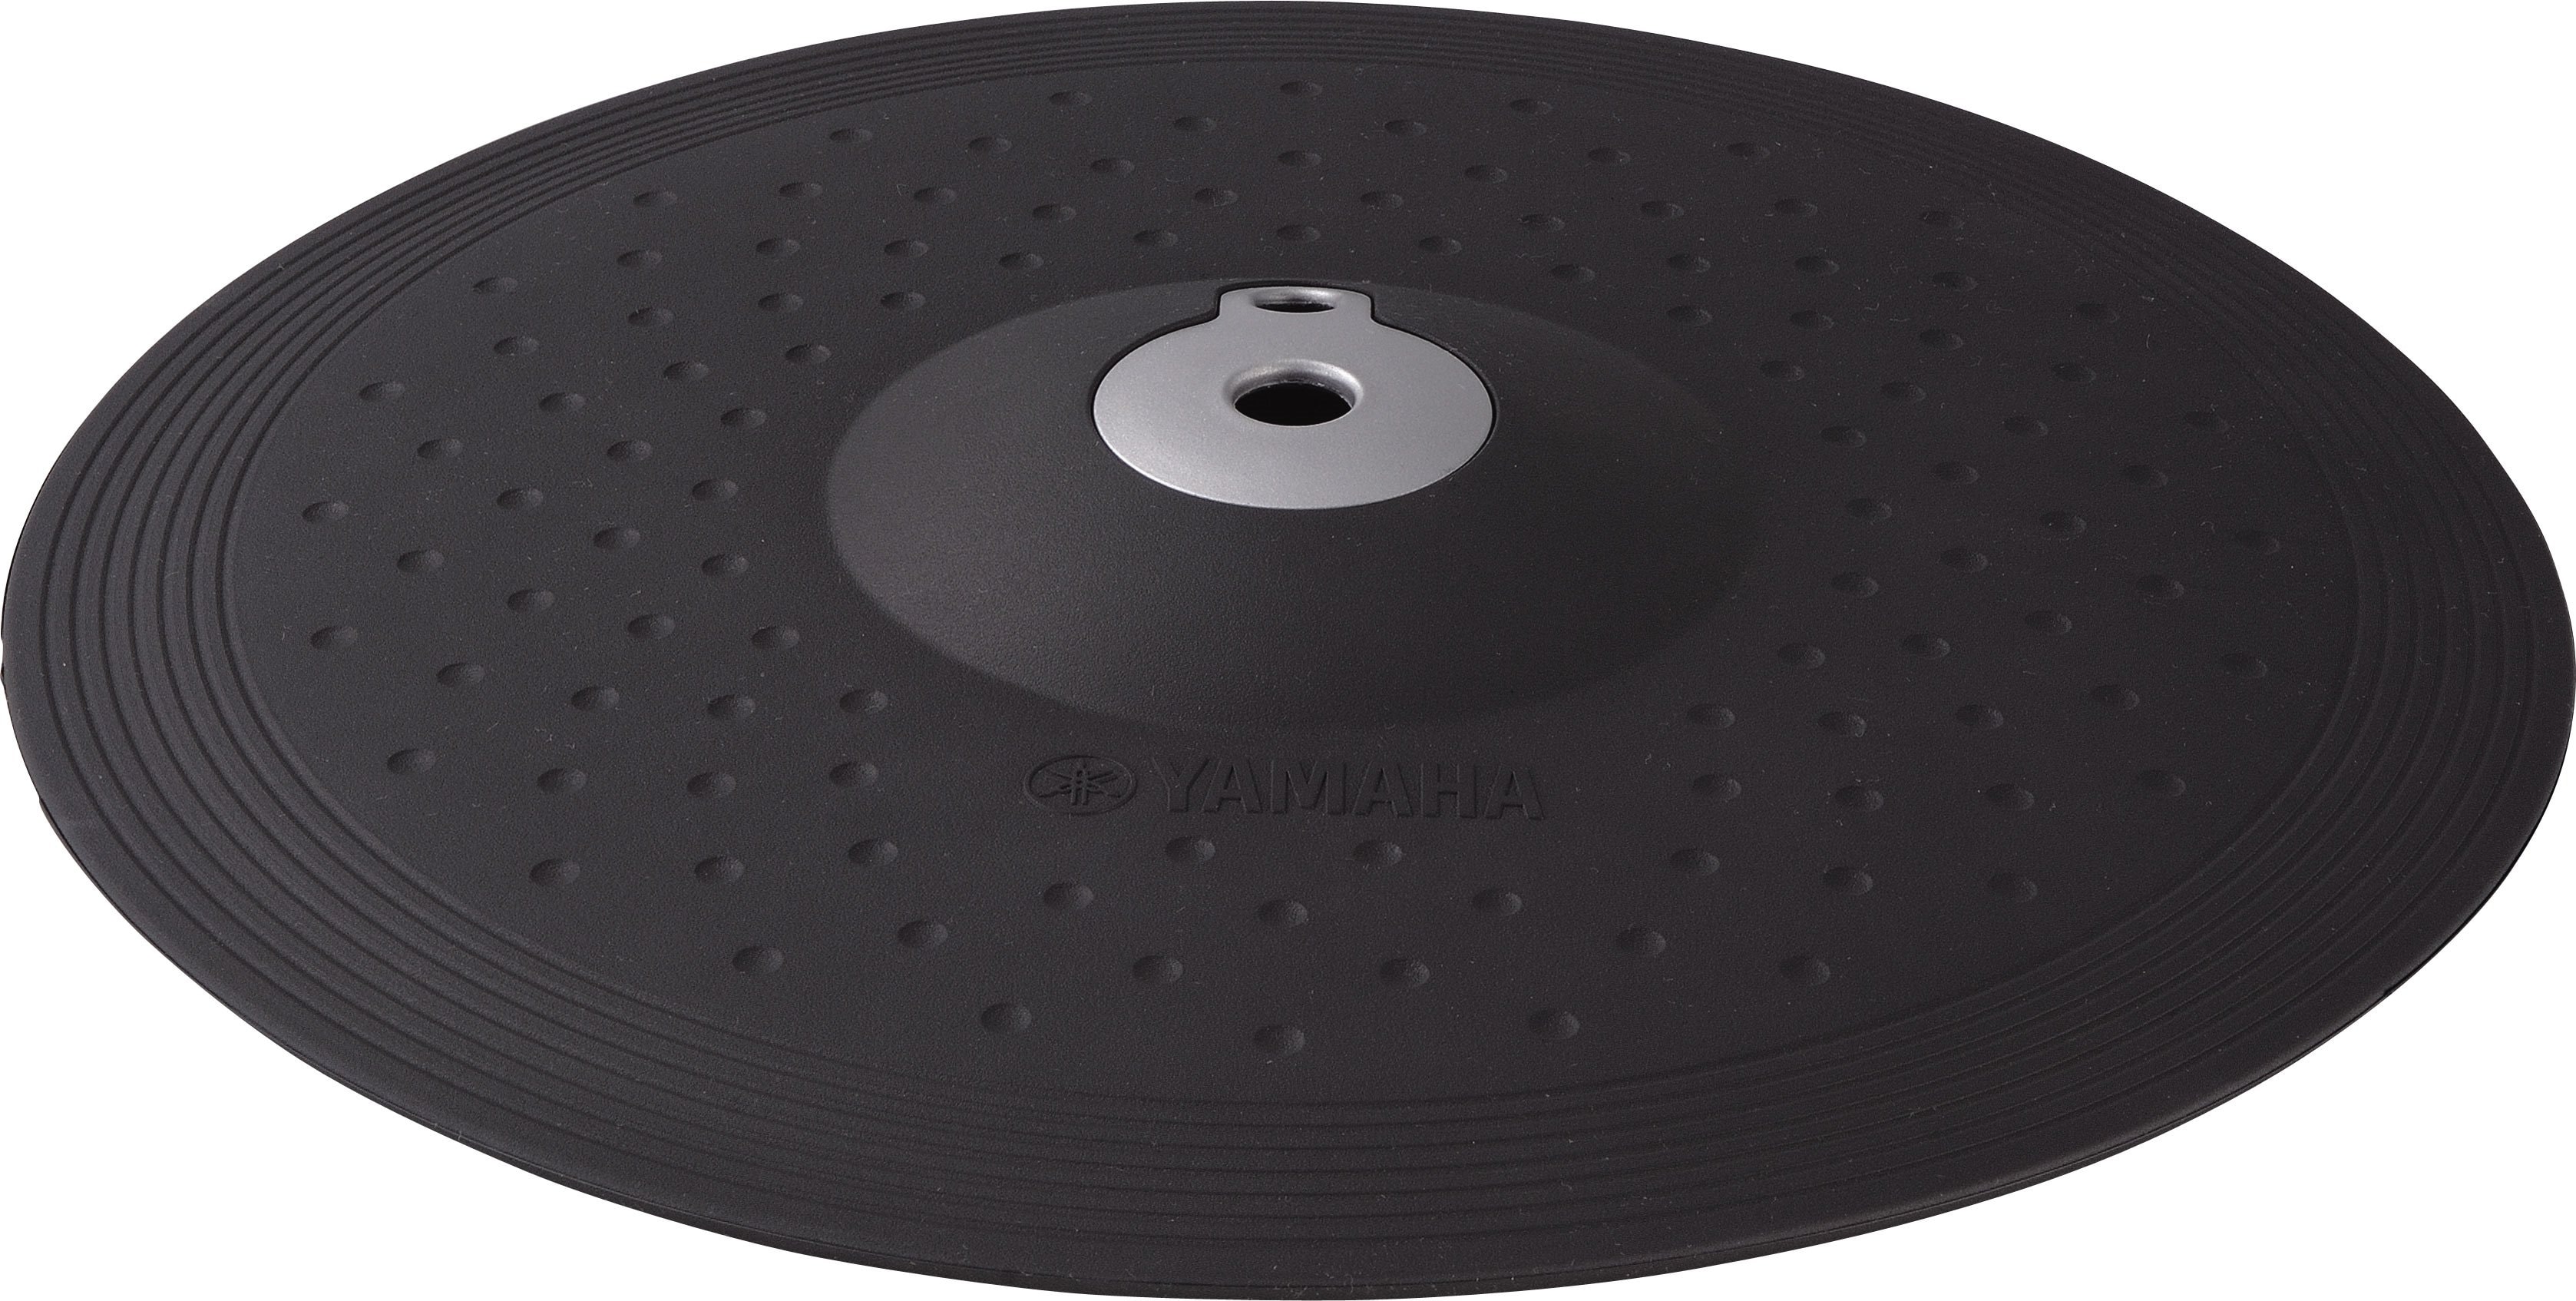 ヤマハ | DTX700 シリーズ - 電子ドラムセット - 概要